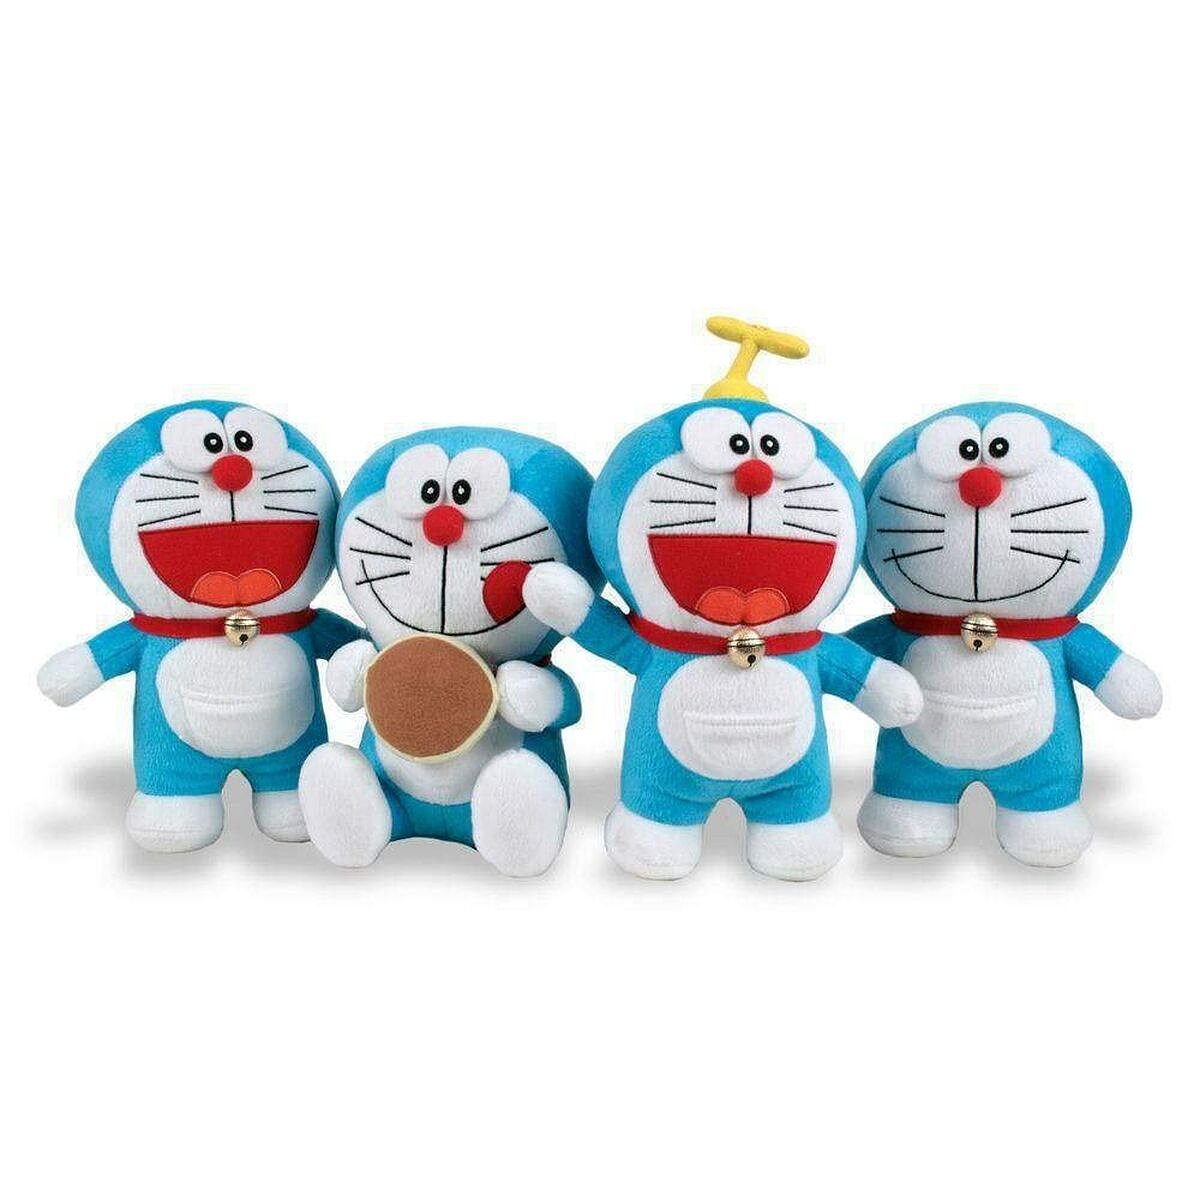 Knuffel Doraemon 20 cm